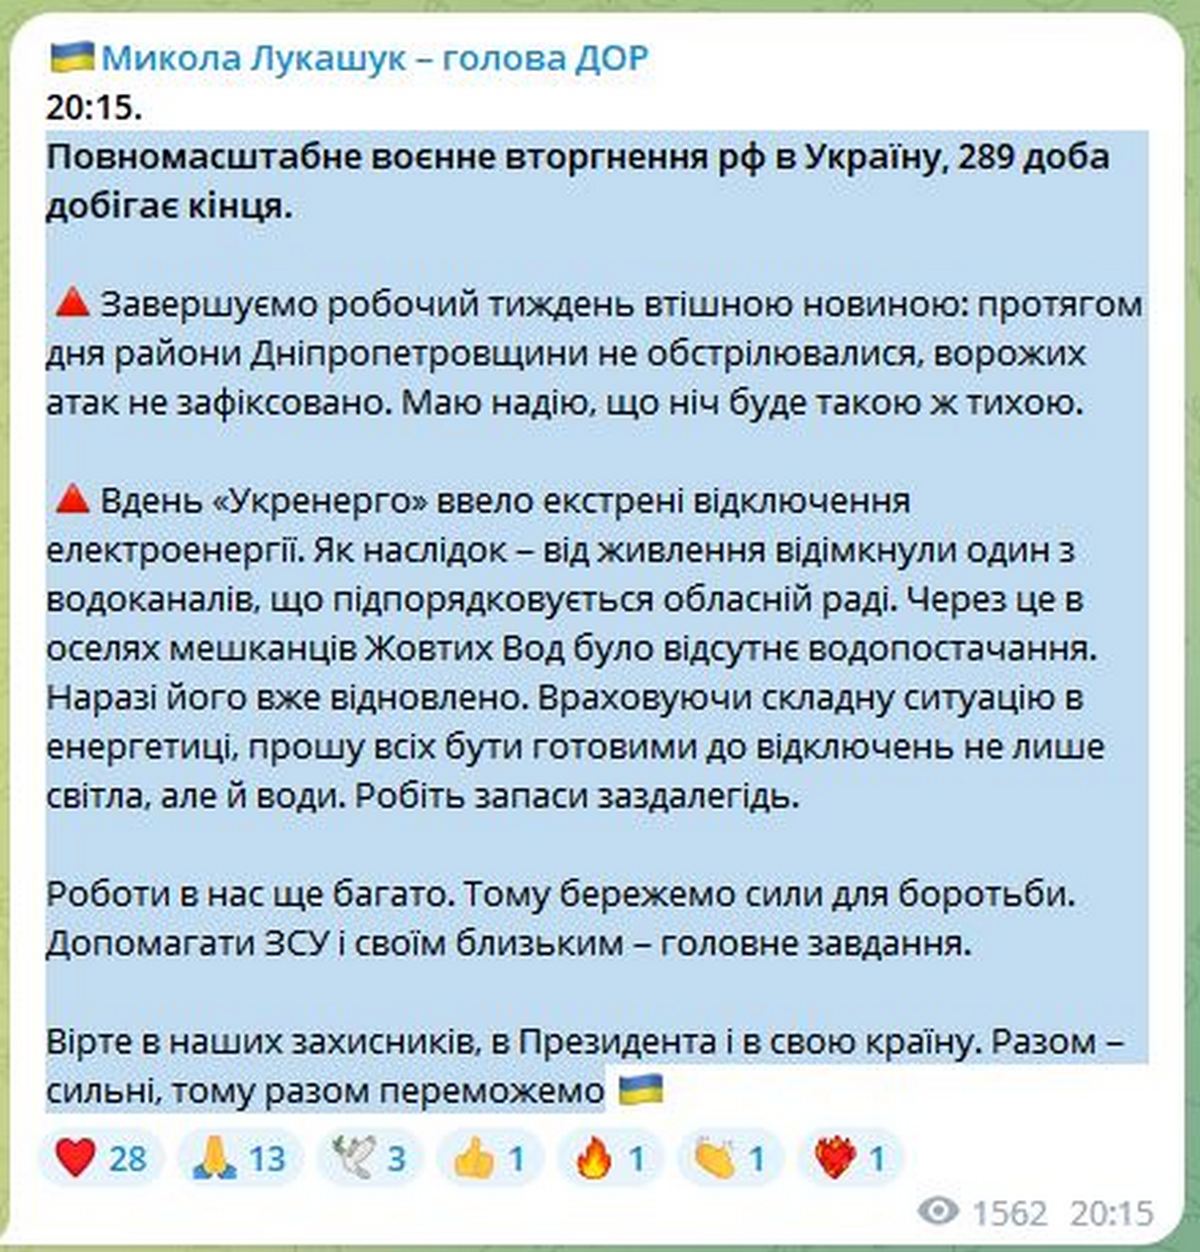 «Прошу всіх бути готовими до відключень не лише світла, але й води» - голова Дніпропетровської облради